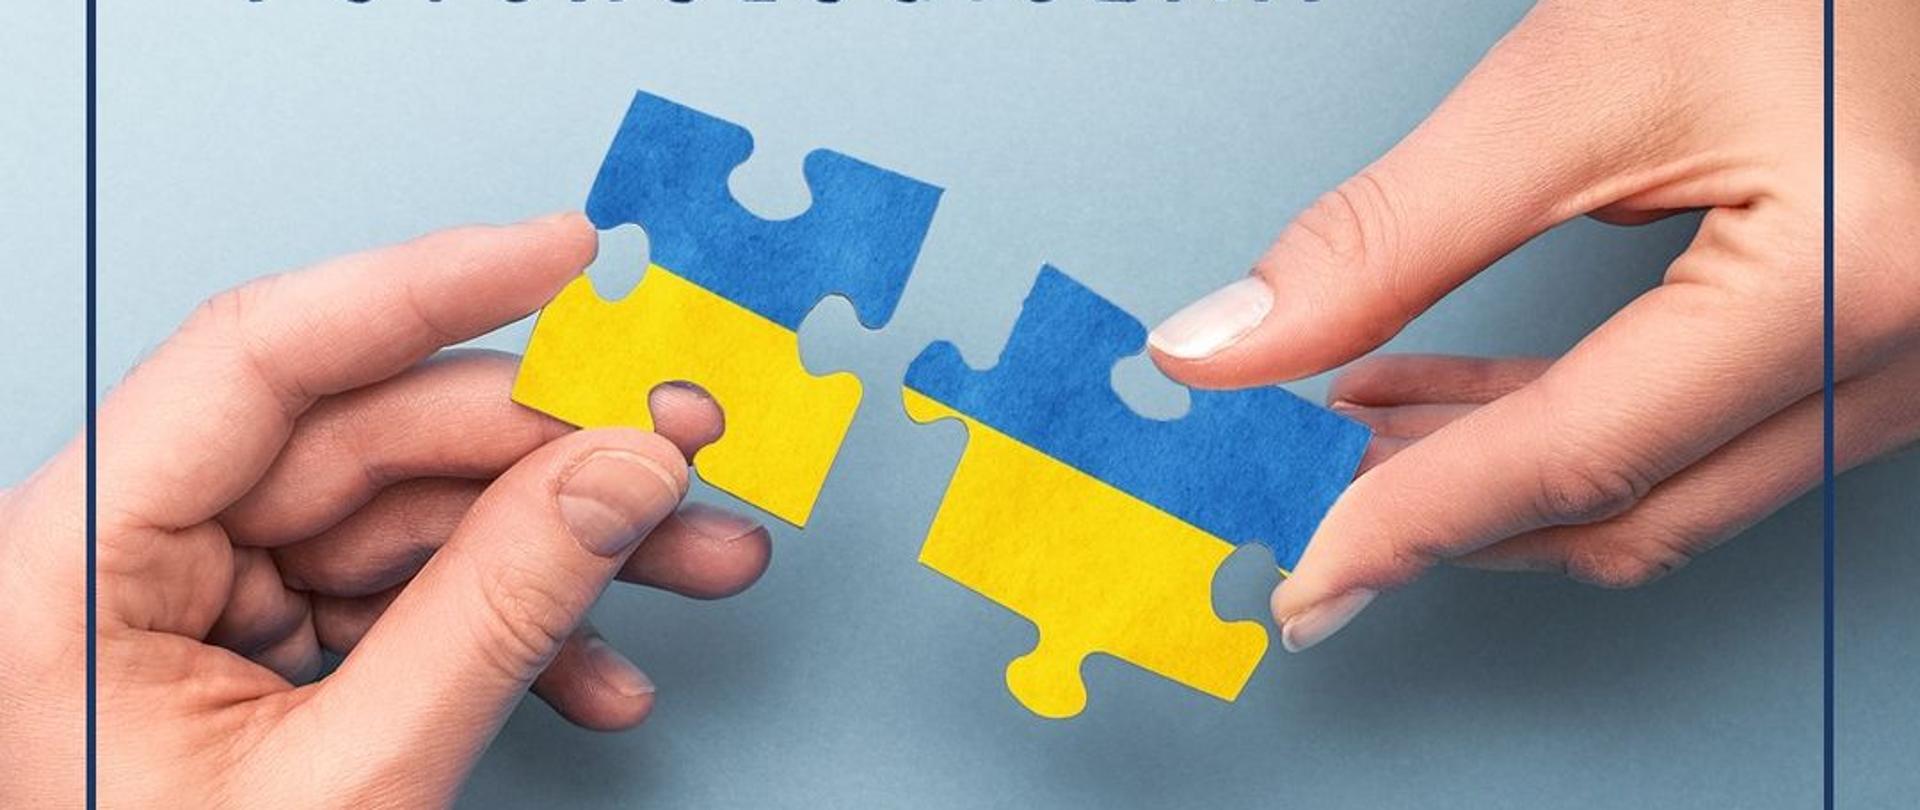 Zdjęcie przedstawia dwie dłonie trzymające puzzle w kolorach żółto - niebieskim 